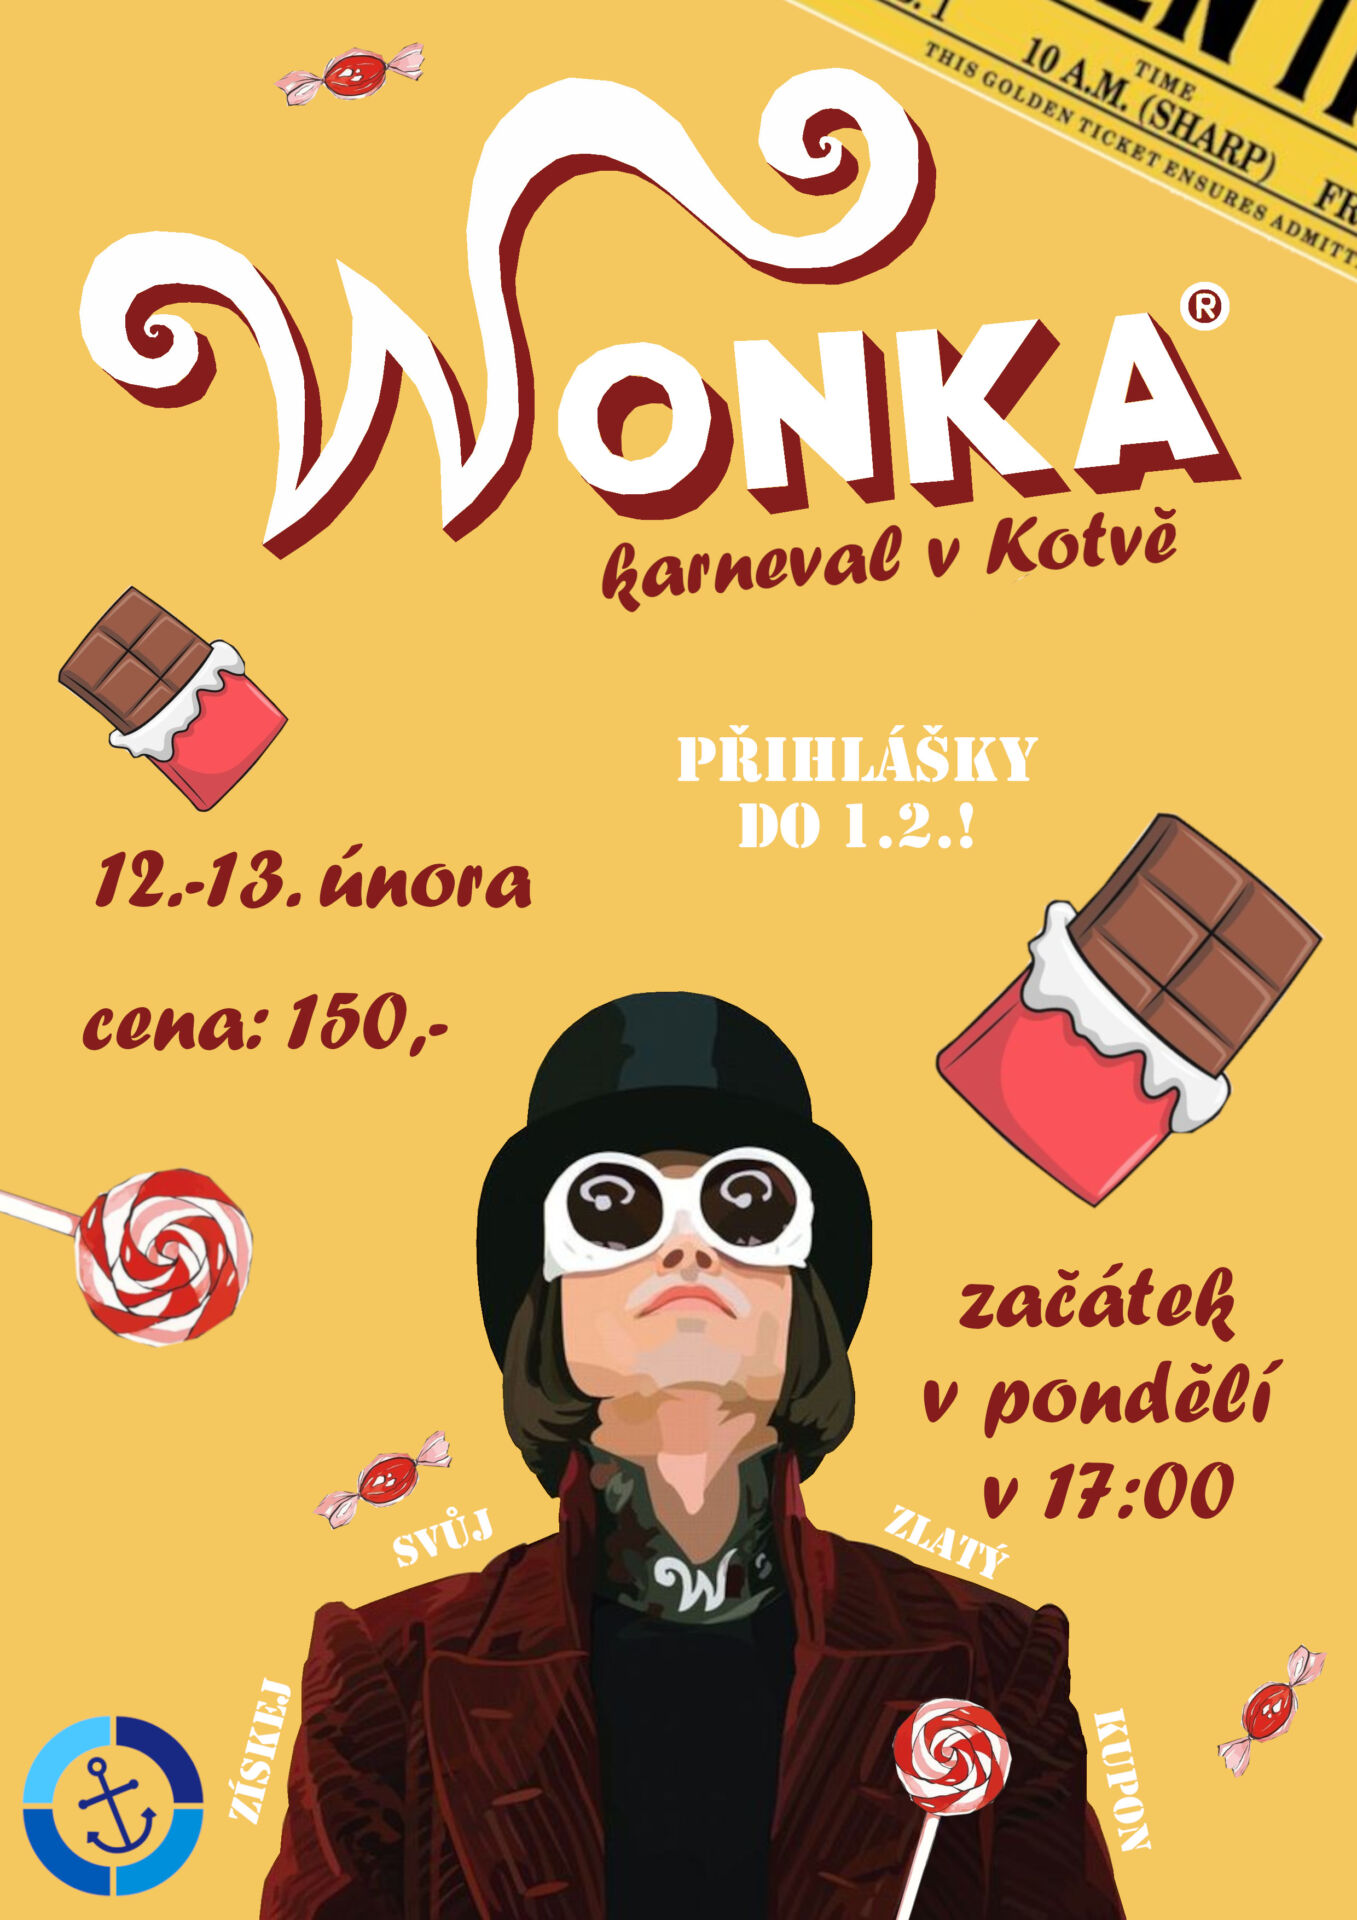 Pozvánka na karneval Wonka (12. -13. února) - Cyrilometodějské ...